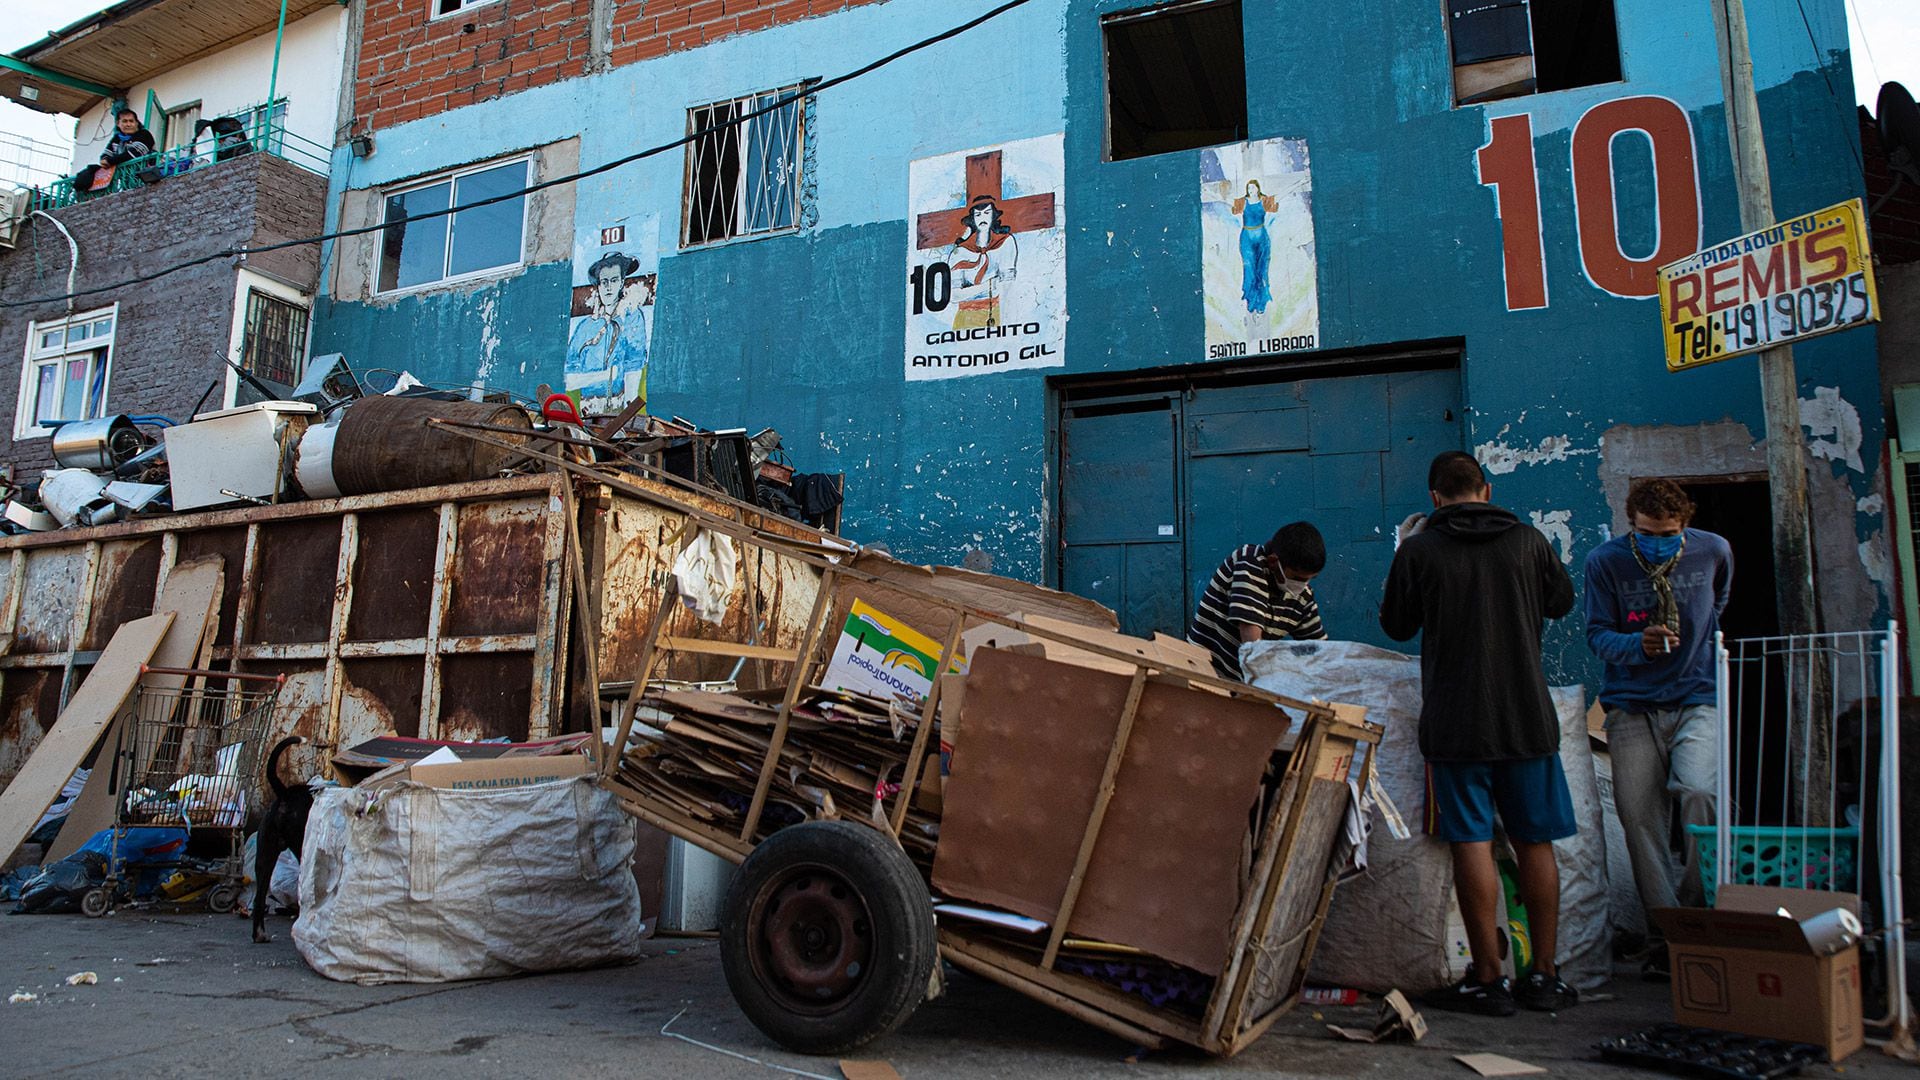 Personas en situacion de calle - coronavirus - argentina - cuarentena - pobreza